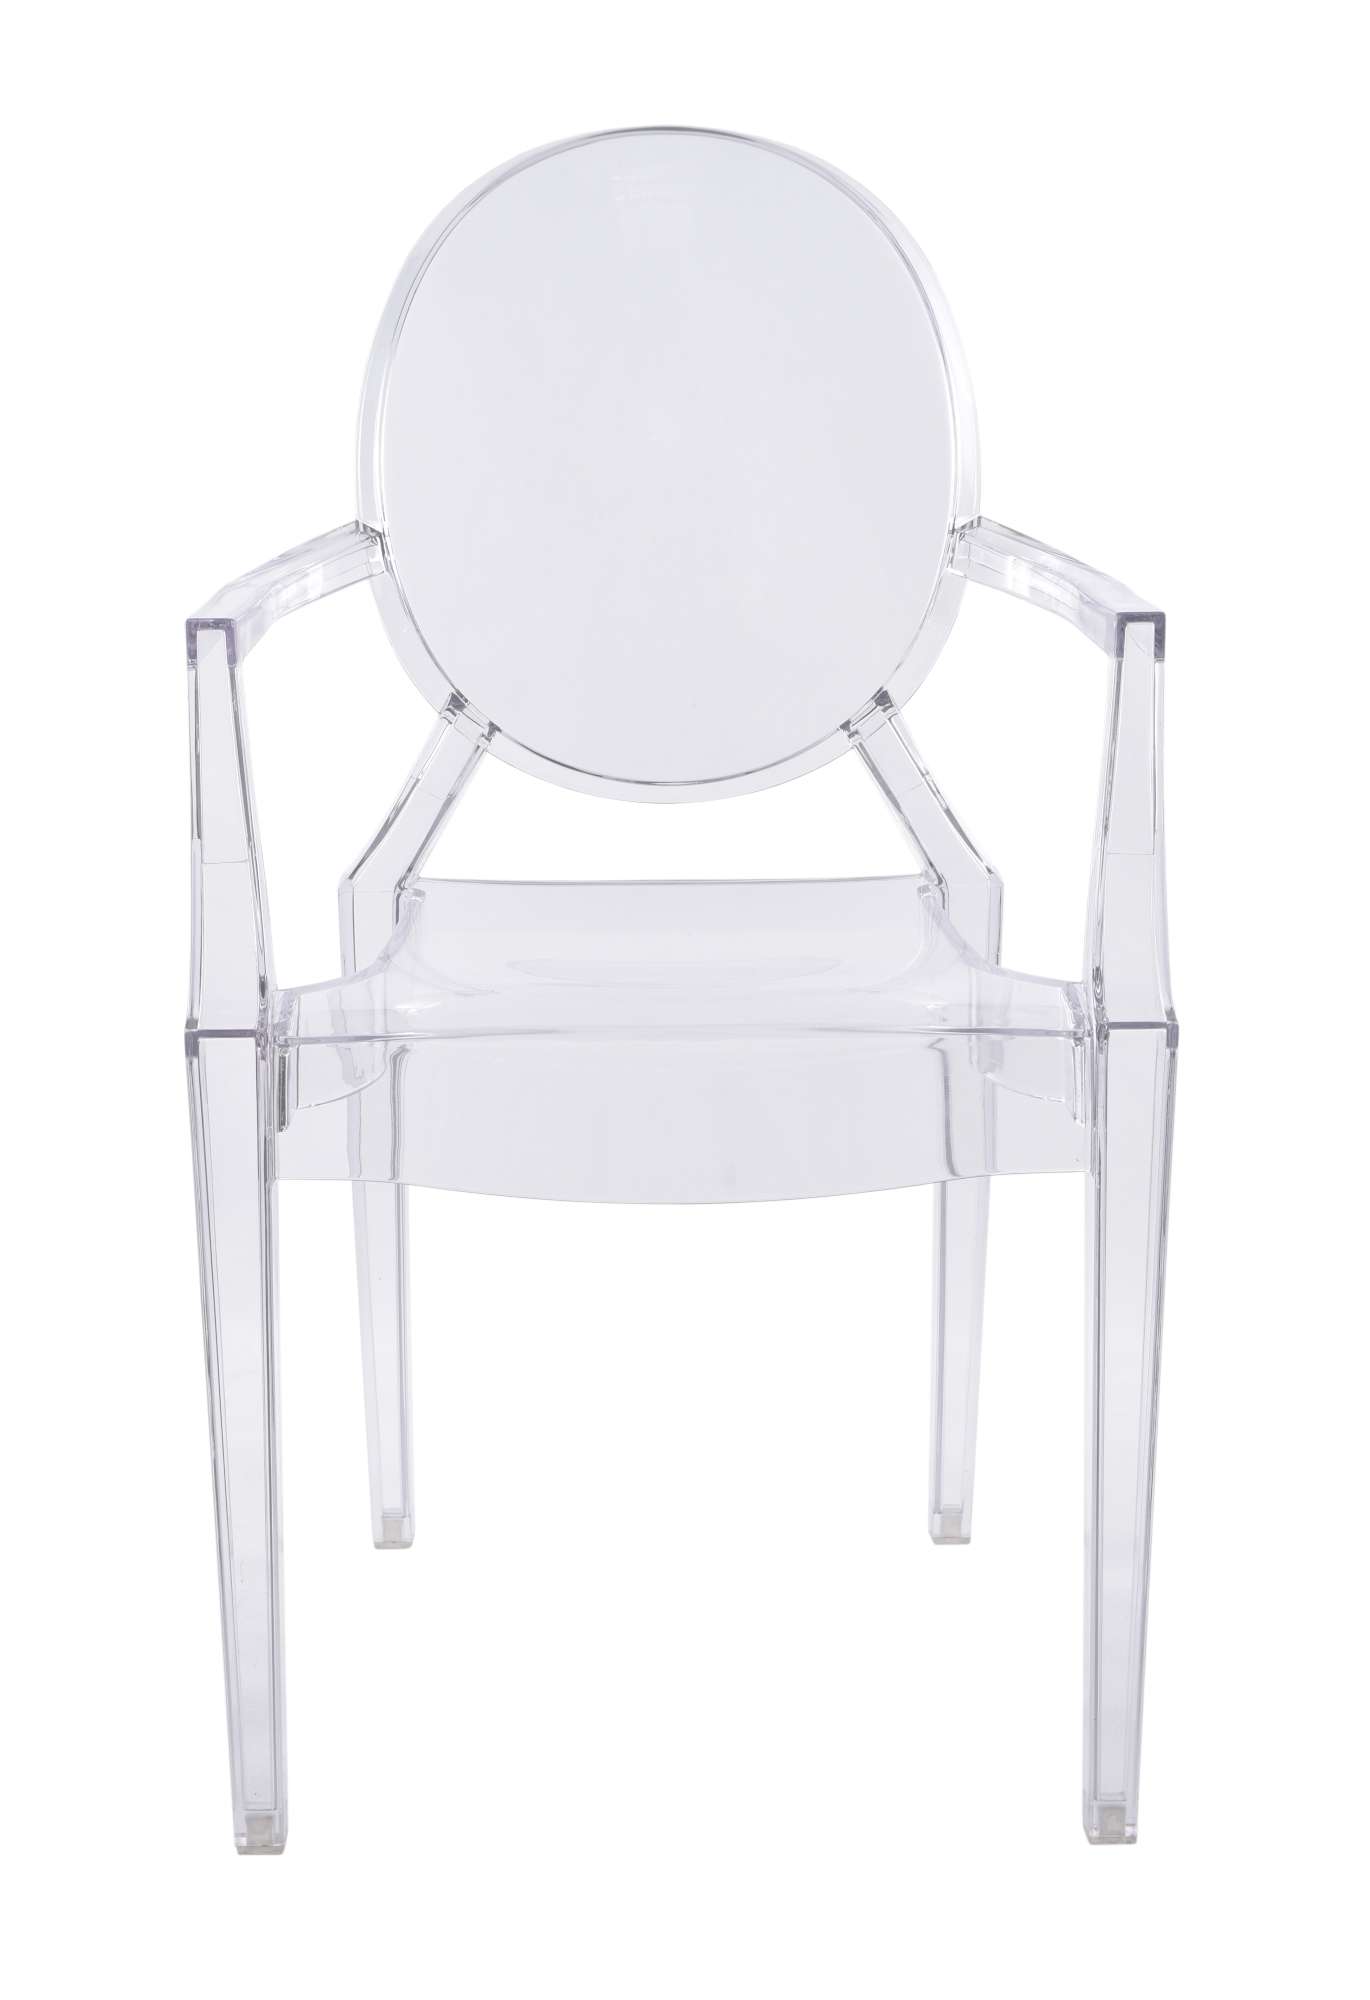 Transparentne krzesło King